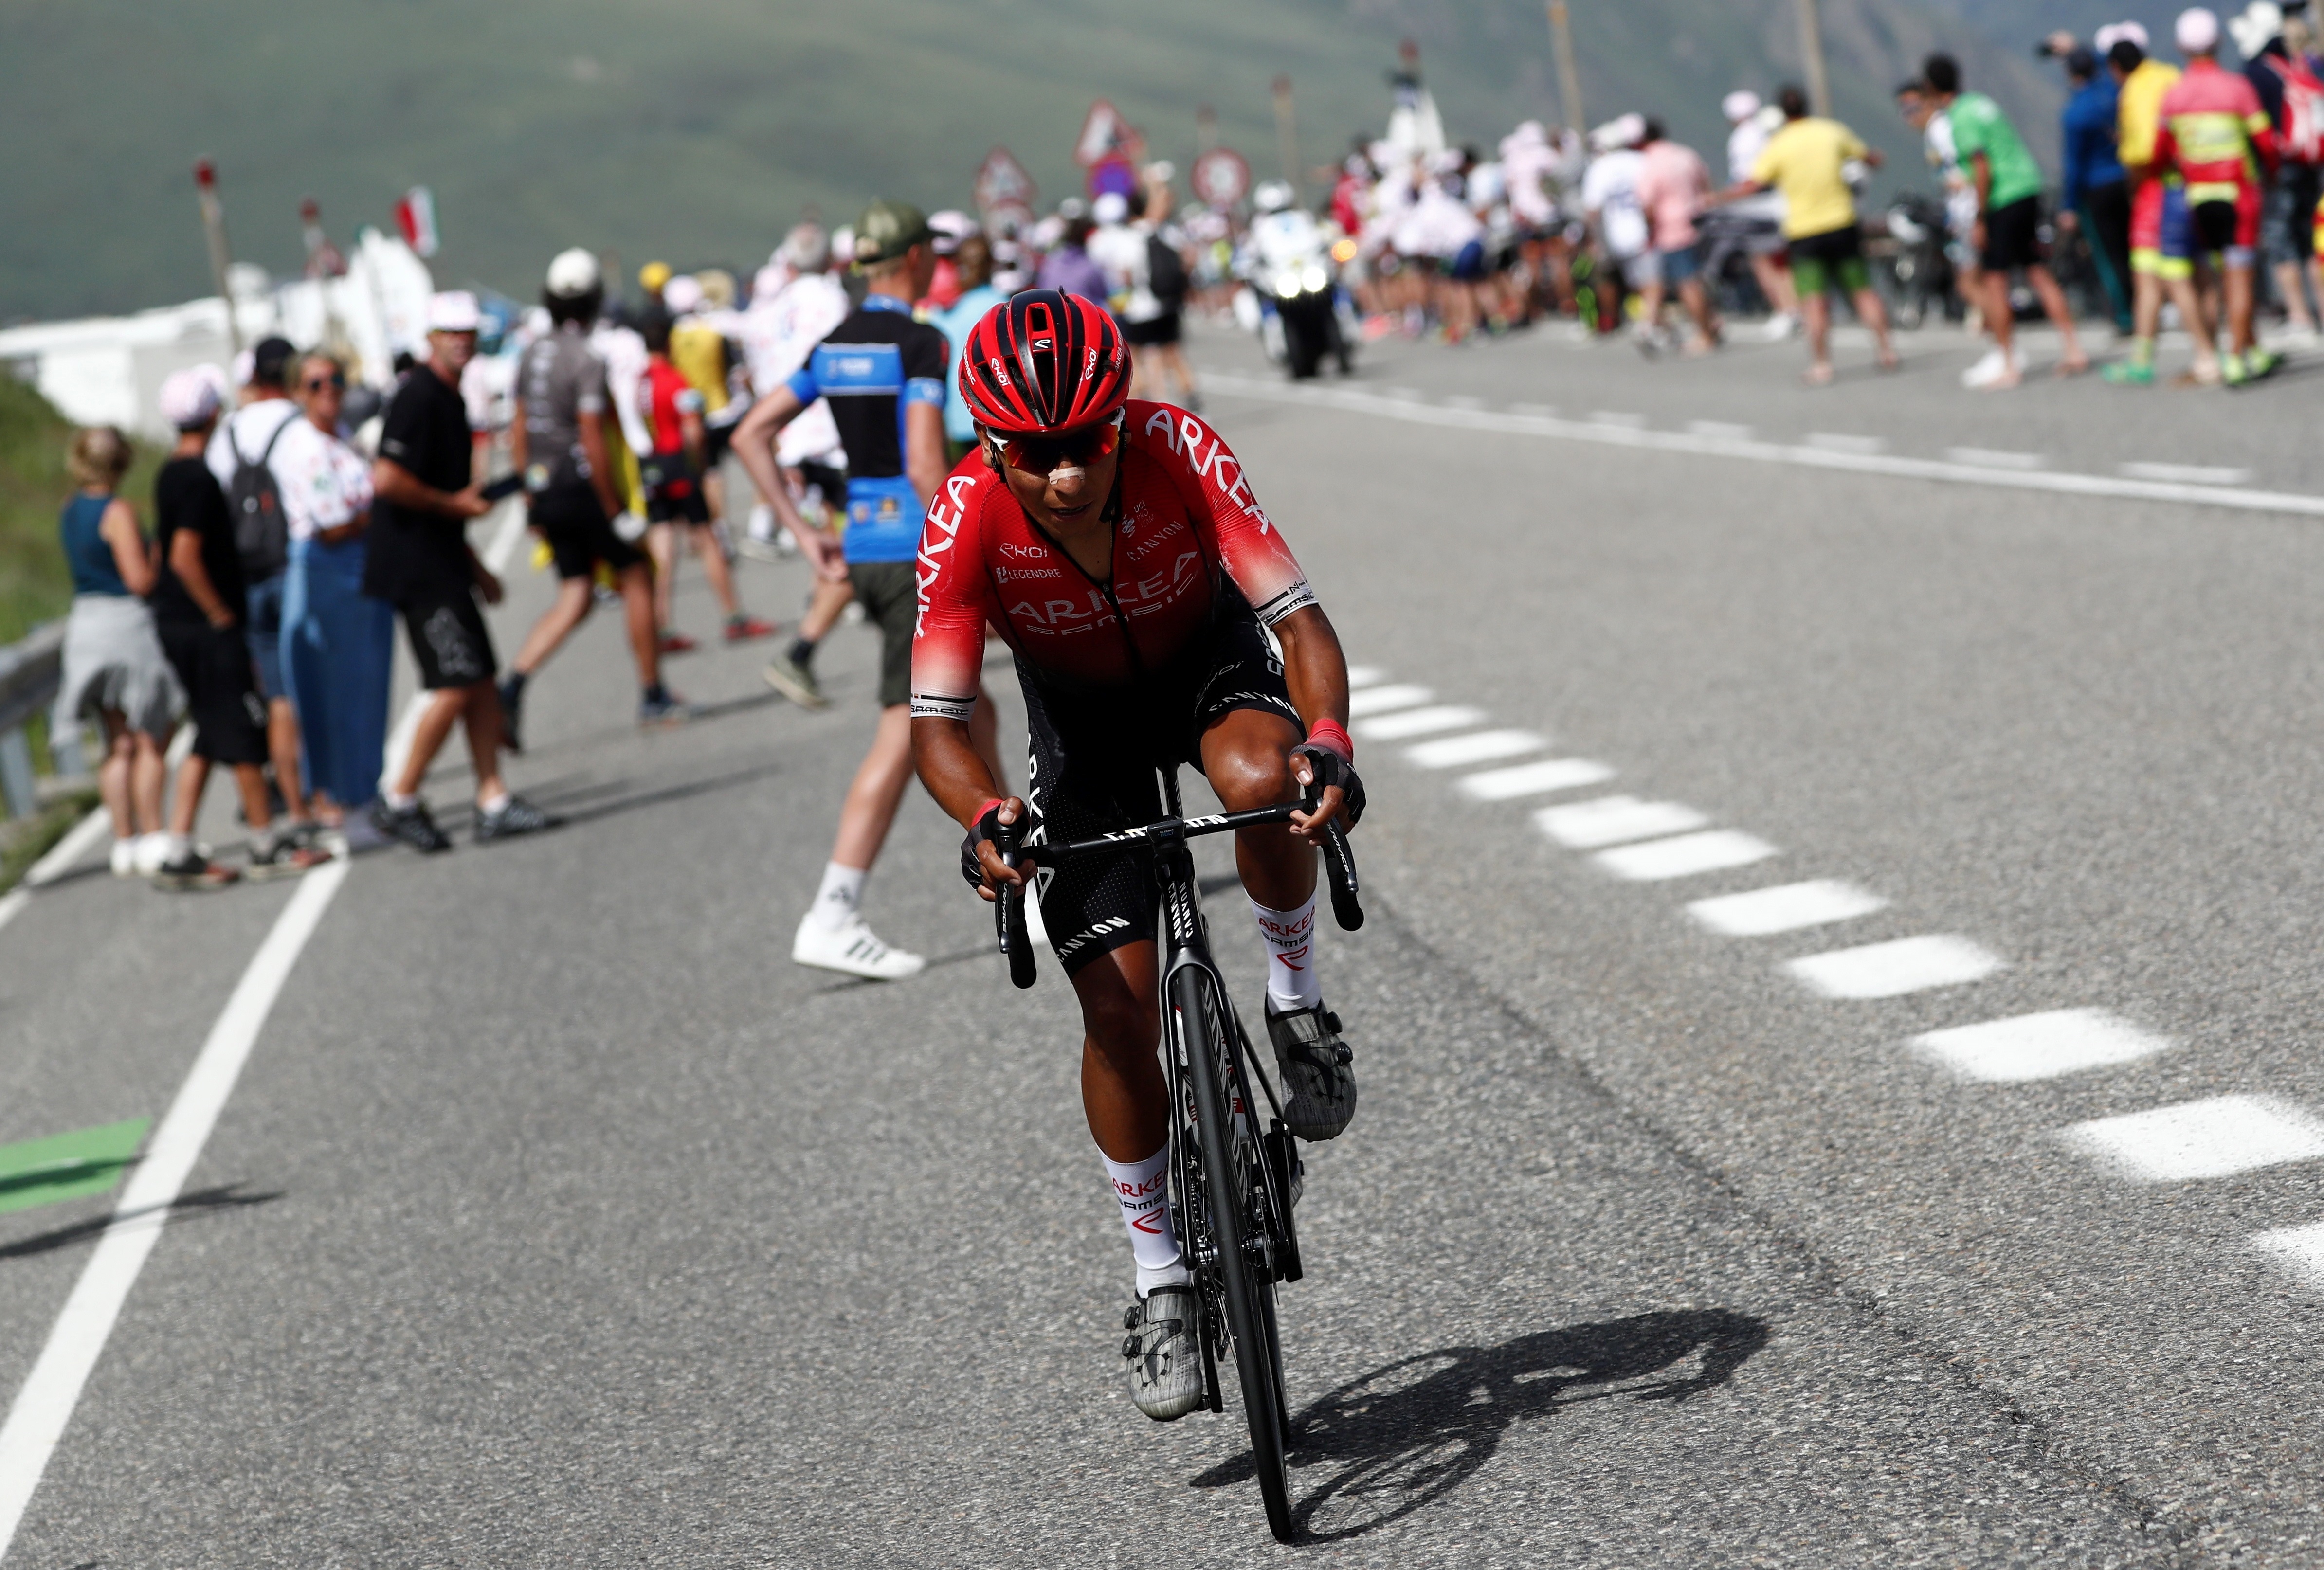 El colombiano Nairo Quintana, en la etapa del Tour de Francia disputada el domingo. EFE/EPA/GUILLAUME HORCAJUELO/Archivo
